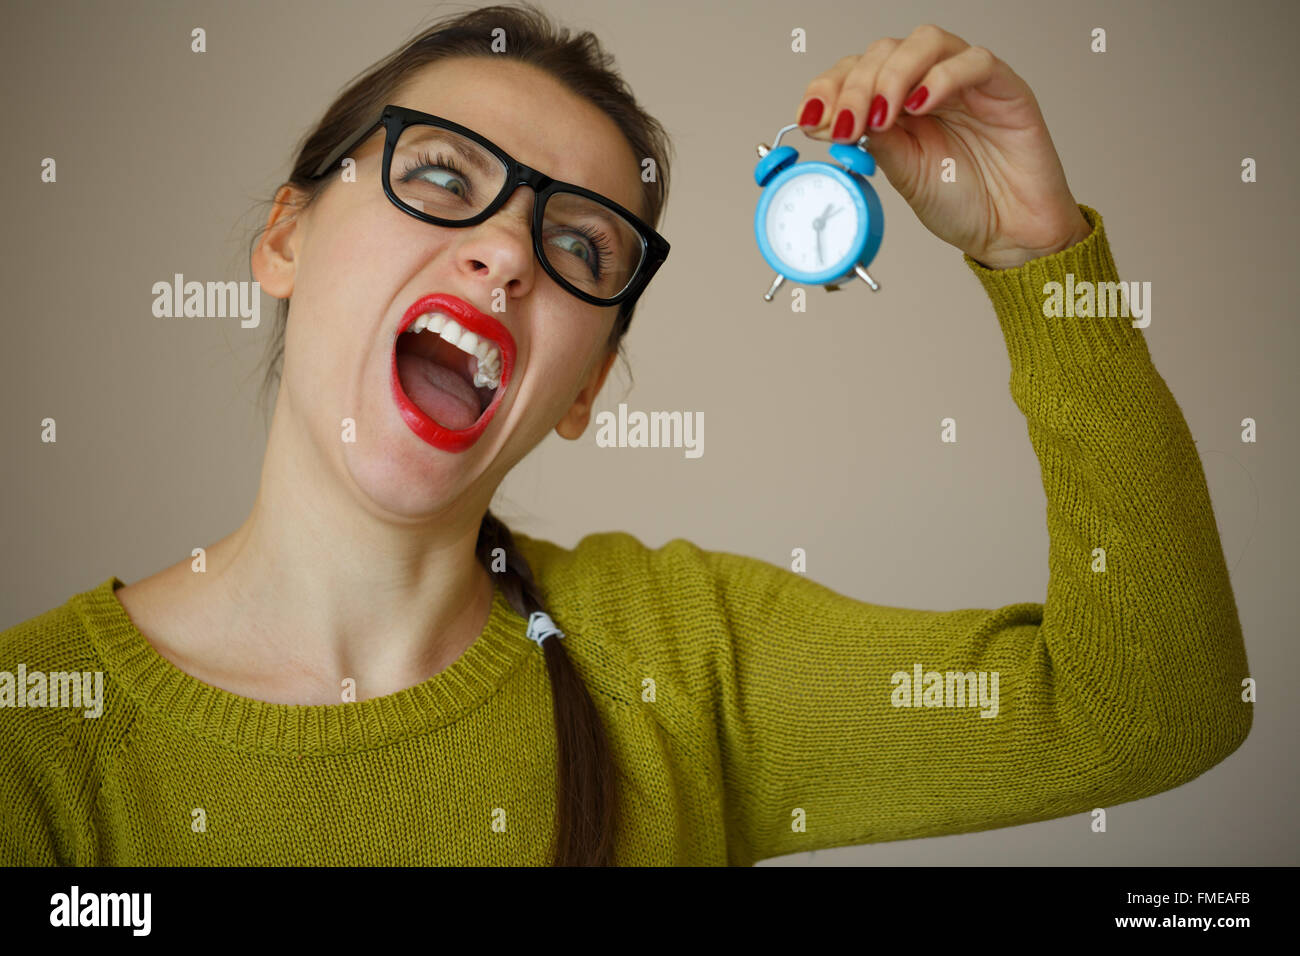 Kleine blaue Wecker in den Händen einer emotionalen jungen Frau Konzept der Zeitersparnis Stockfoto